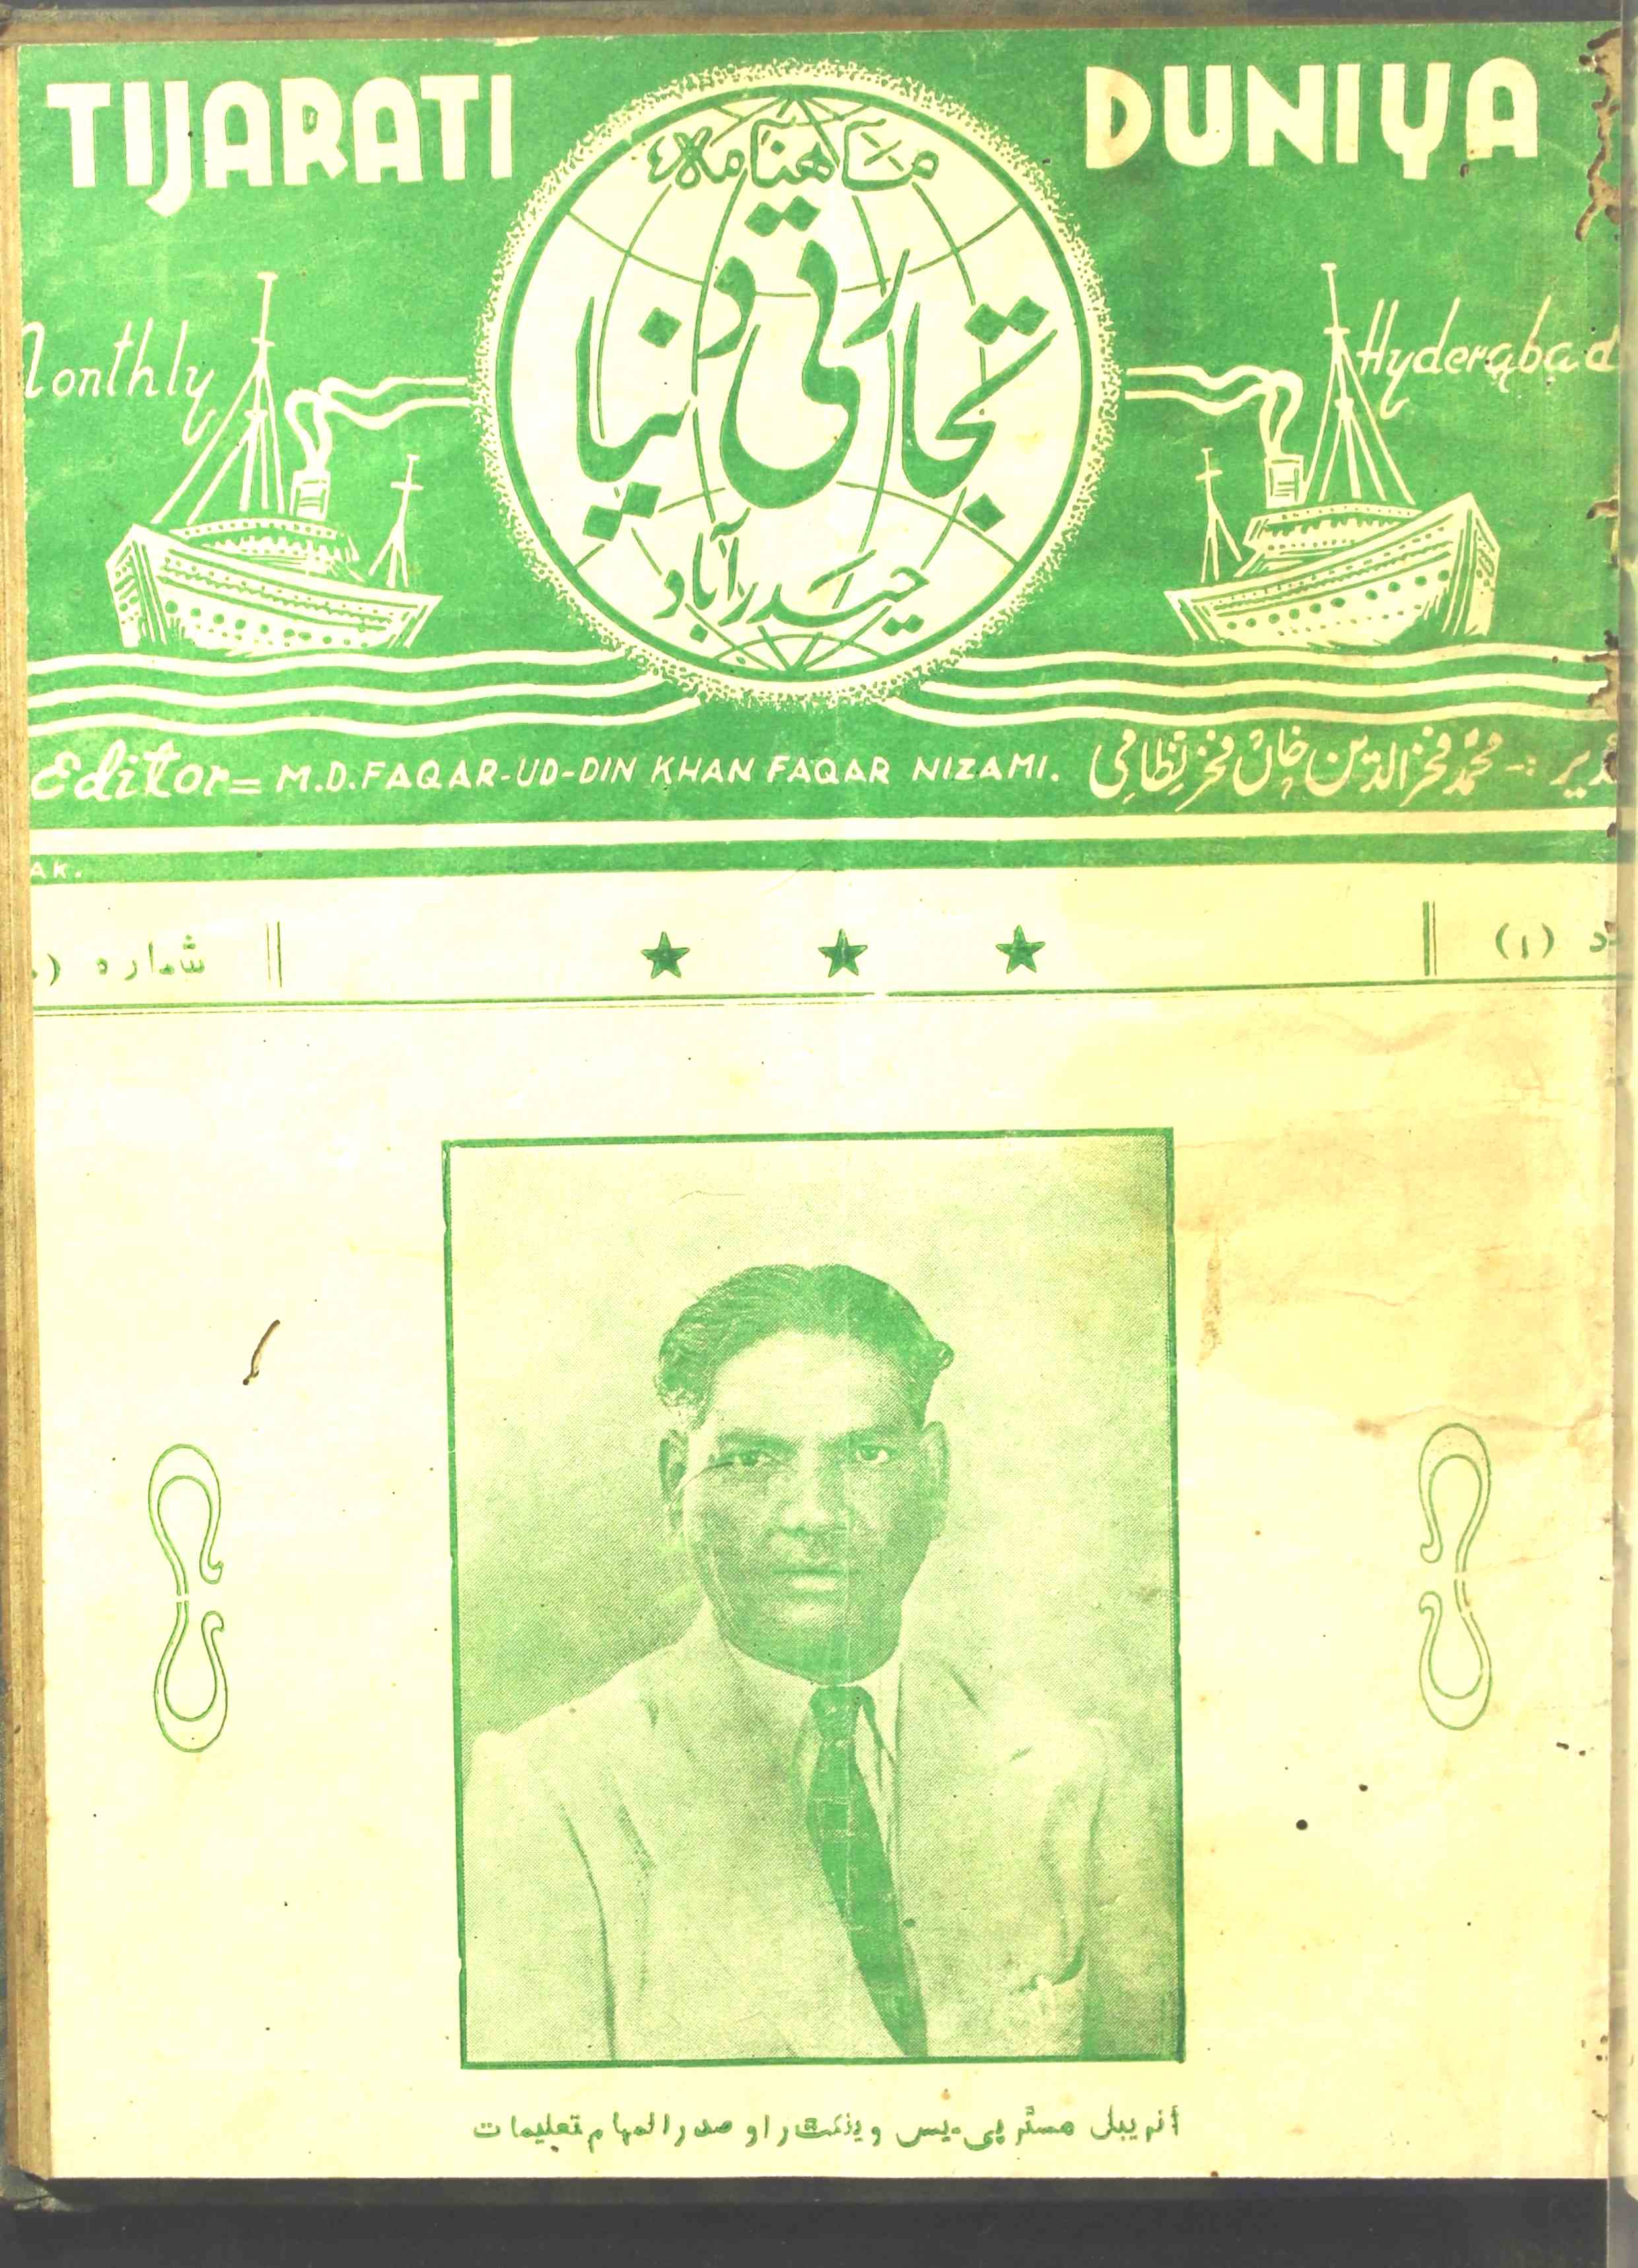 Tijarati Duniya Jild 1 No 10 April 1948